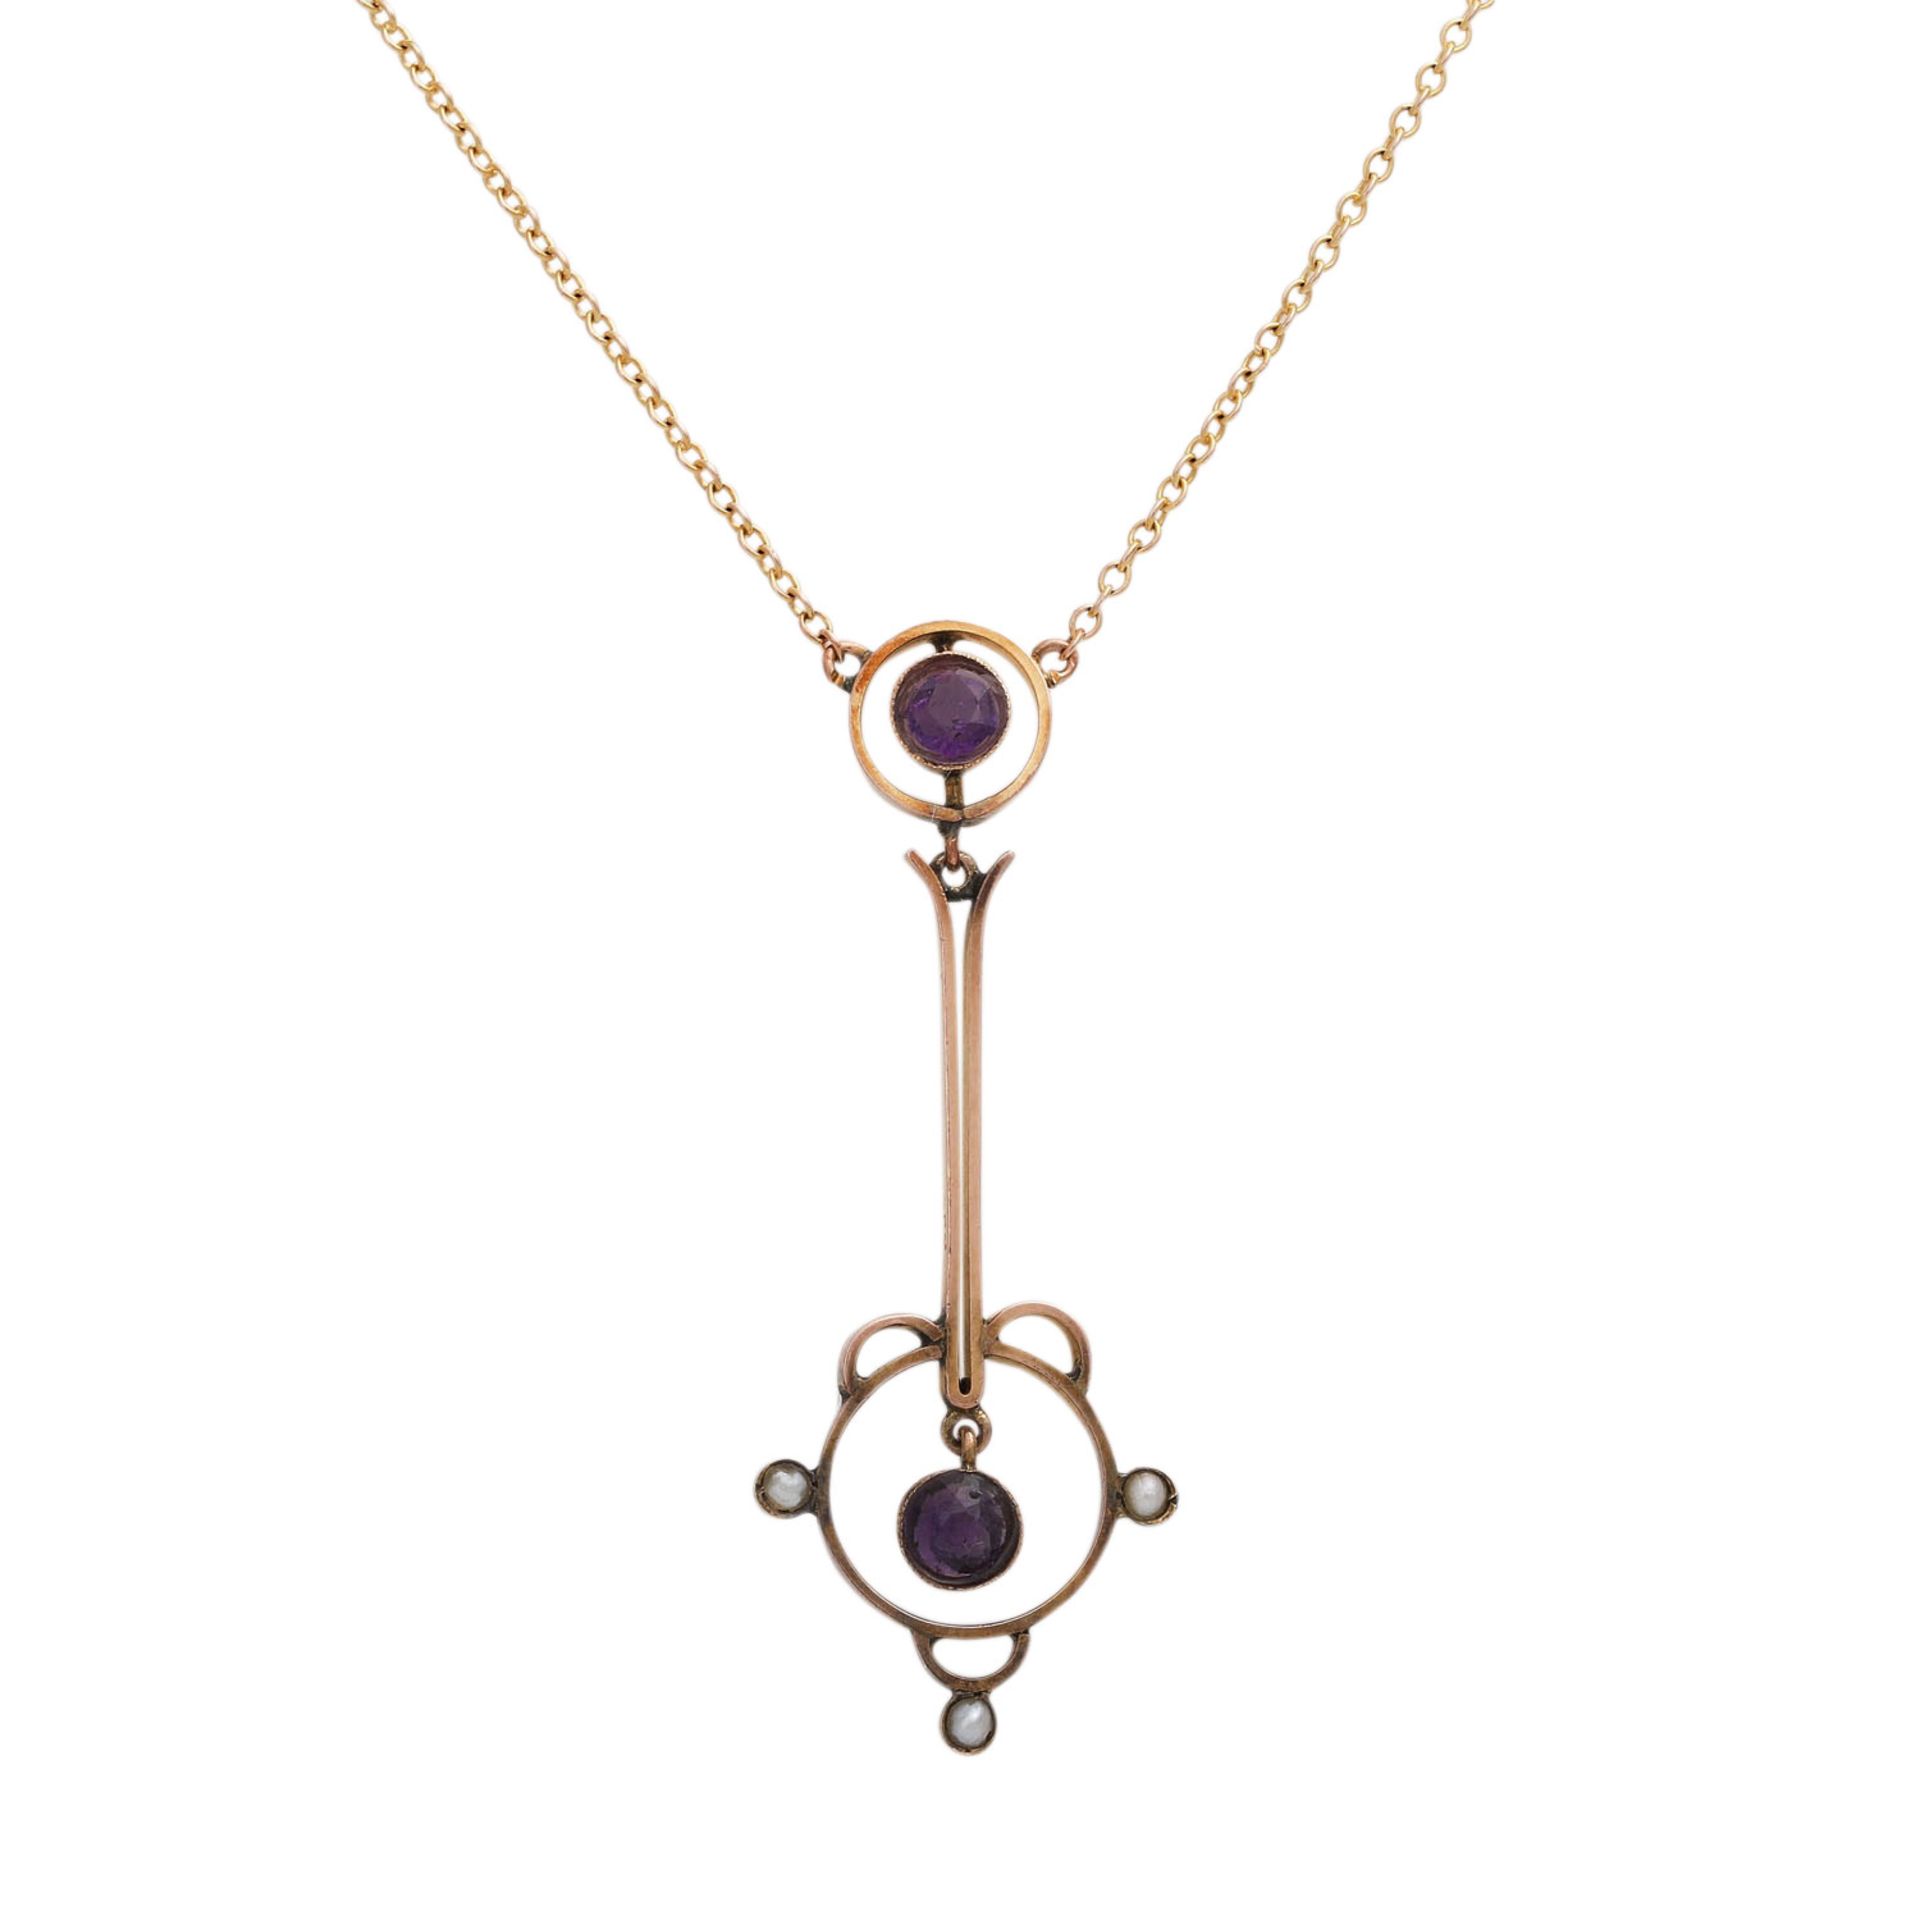 Jugendstil Collier mit kleinen Amethystenund kleinen Perlen, GG 9K, Kettenlänge ca. 39 cm, - Bild 2 aus 4